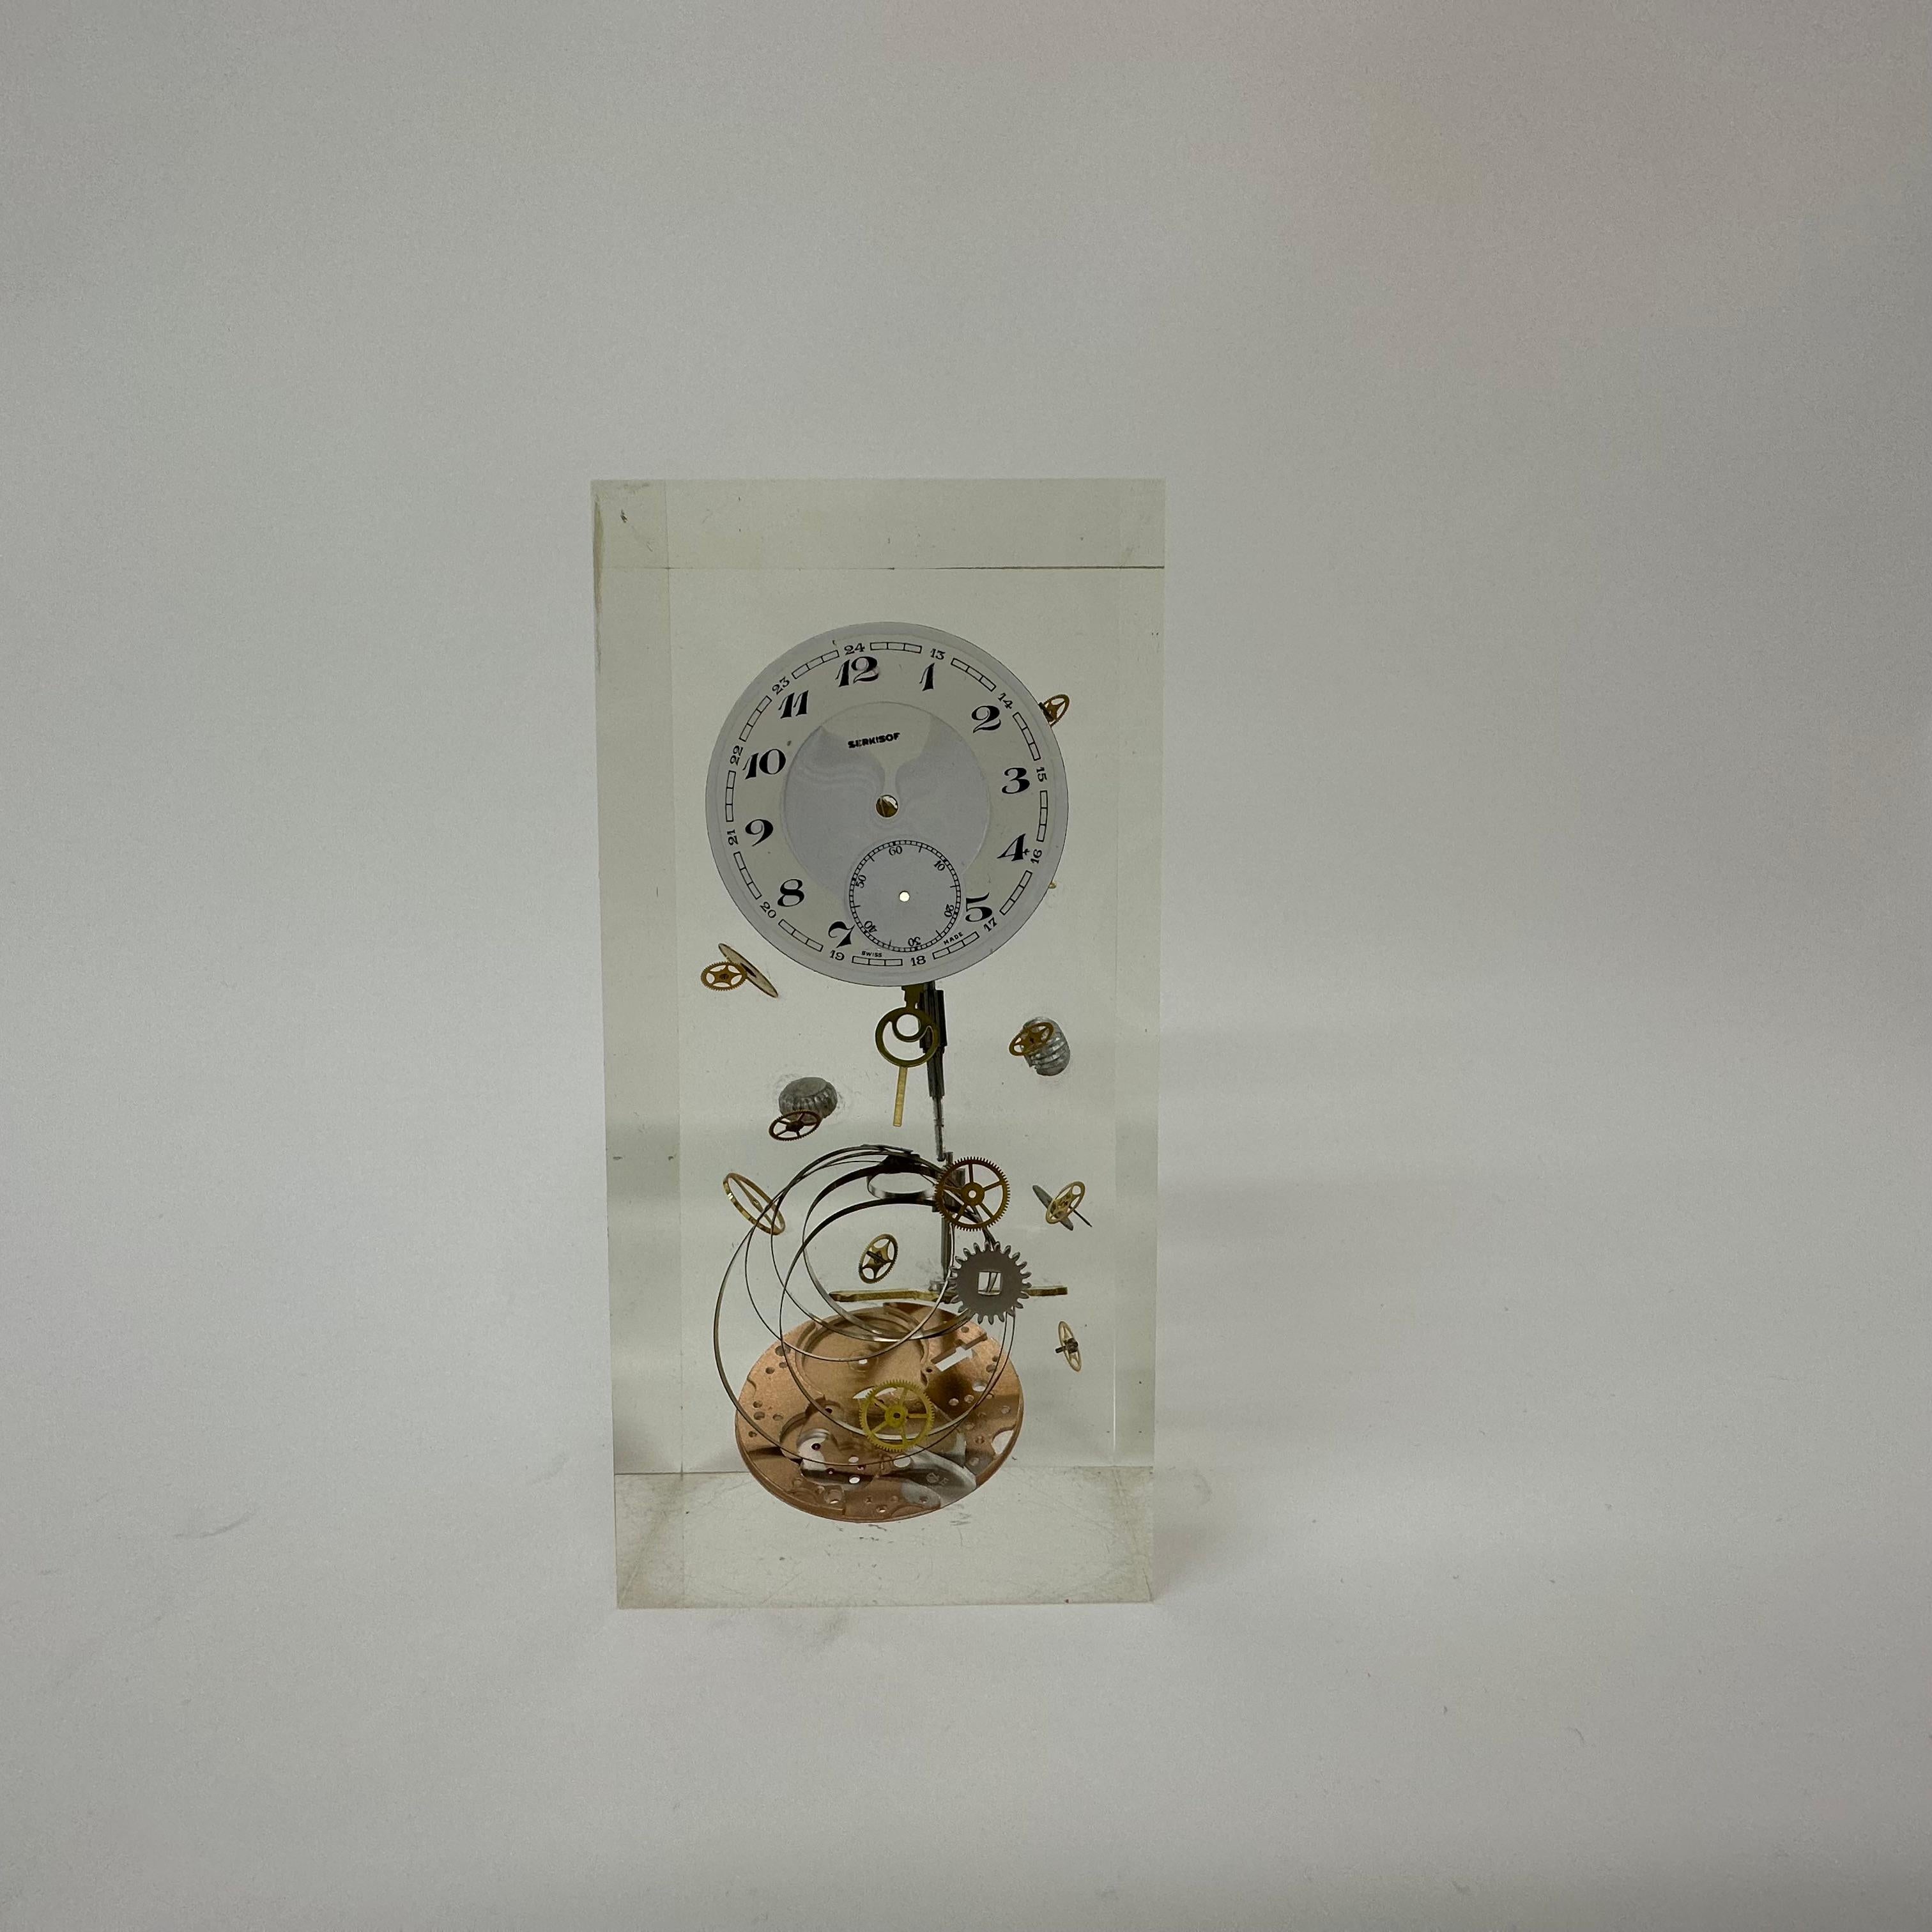 Pierre Giraudon clock parts in lucite , 1970’s France

Dimensions: 13,5cm H, 6,5cm W, 5cm D
Condition: Mint
Designer: Pierre Giroudon
Origin: France
Period: 1970’s
